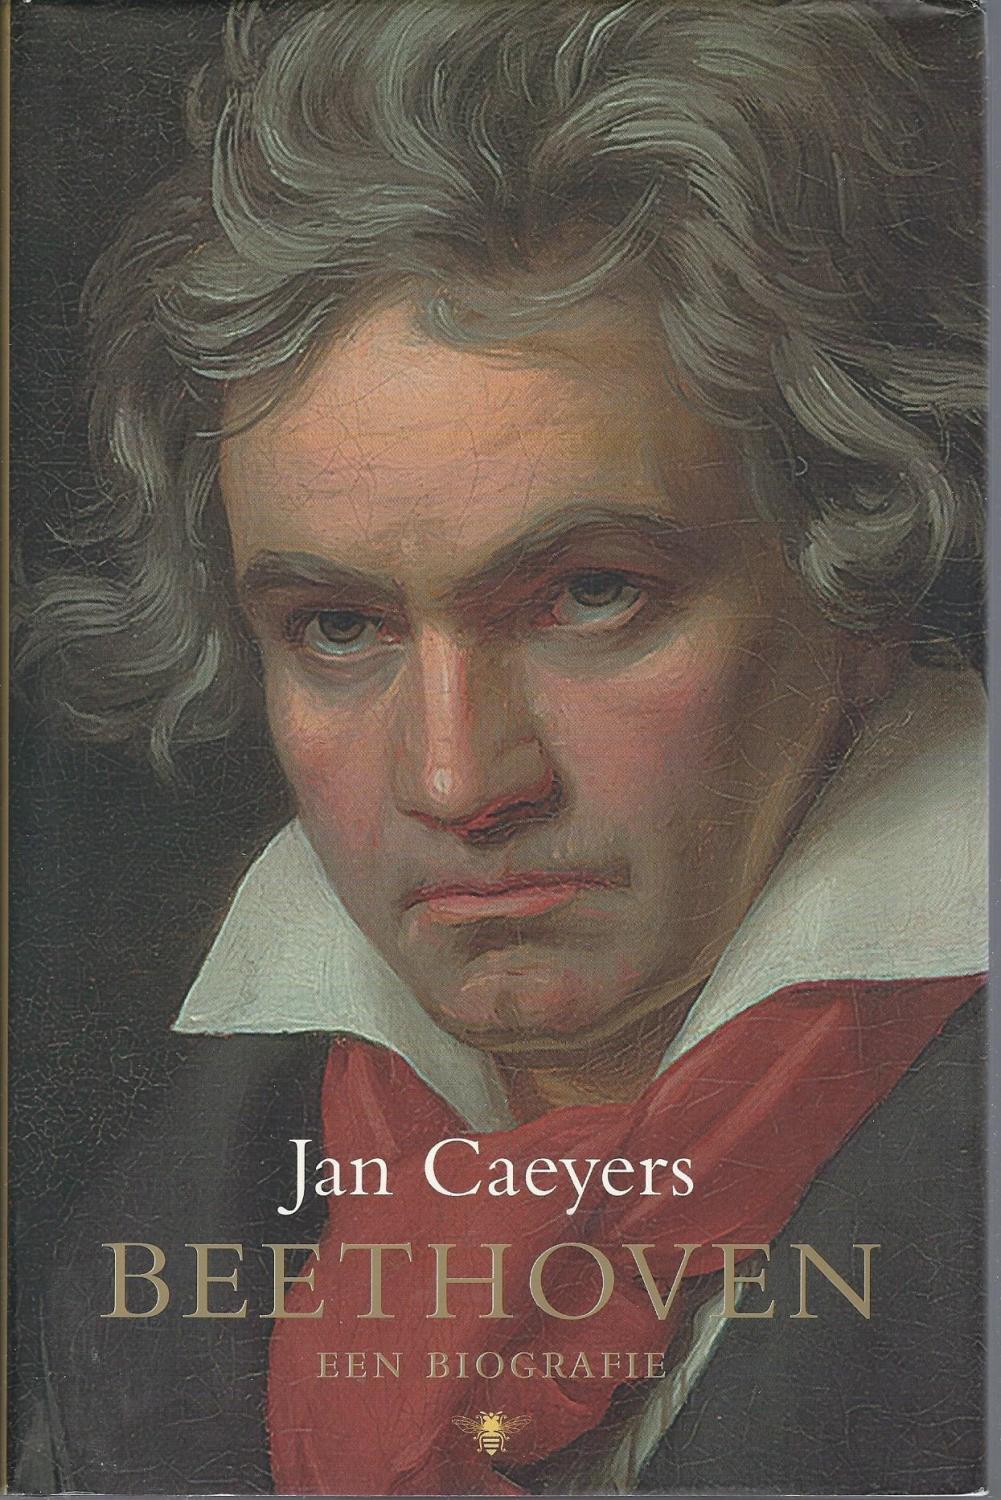 Beethoven: een biografie